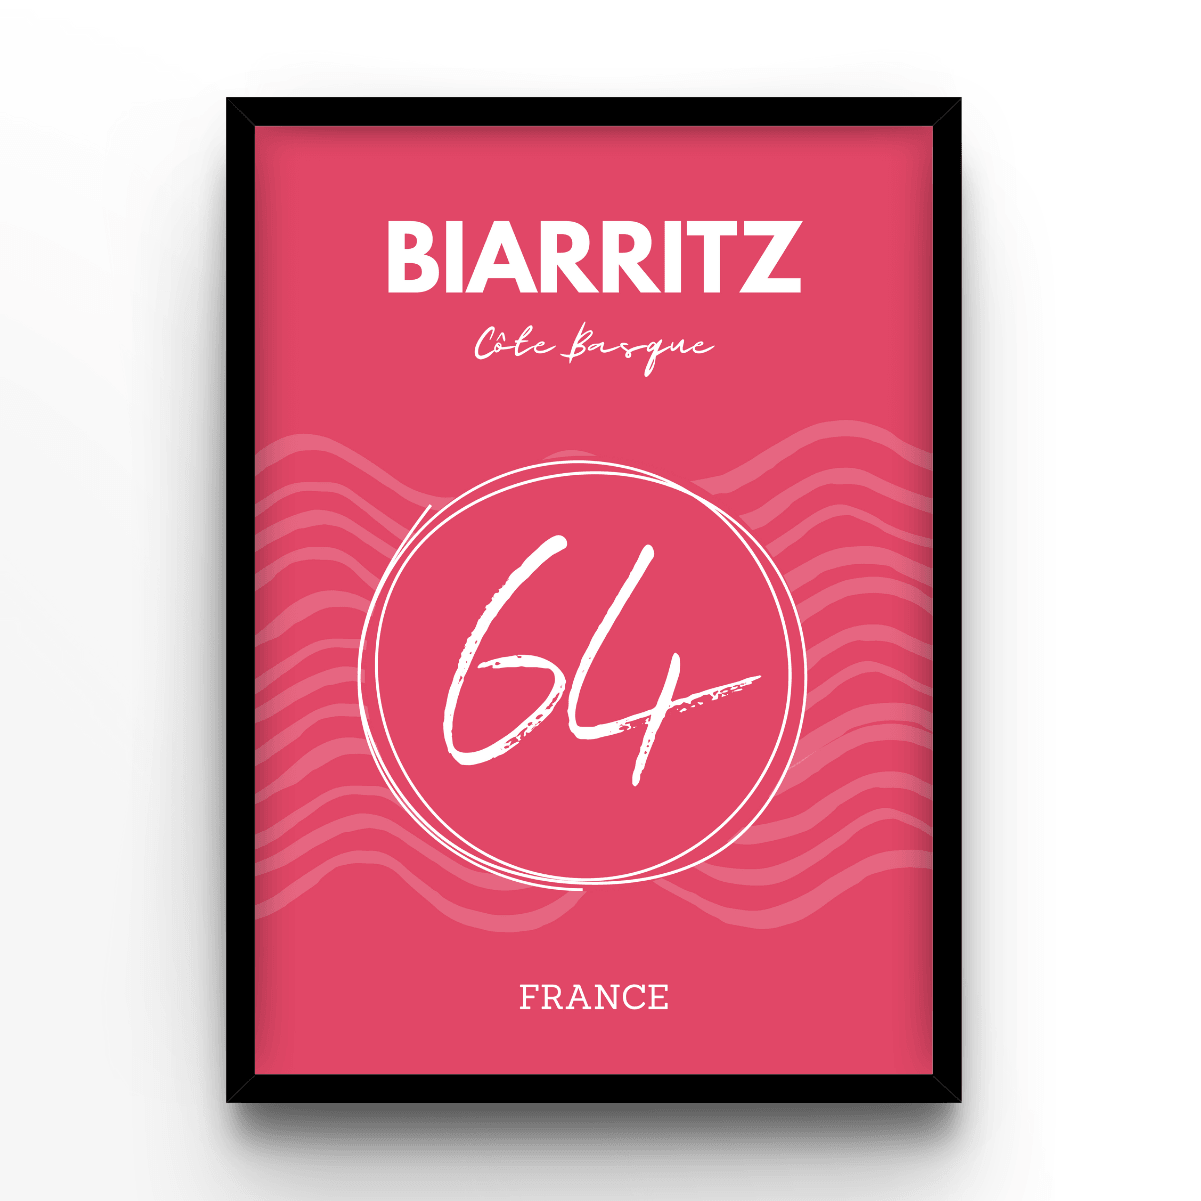 Biarritz - A4, A3, A2 Posters Base - Poster Print Shop / Art Prints / PostersBase